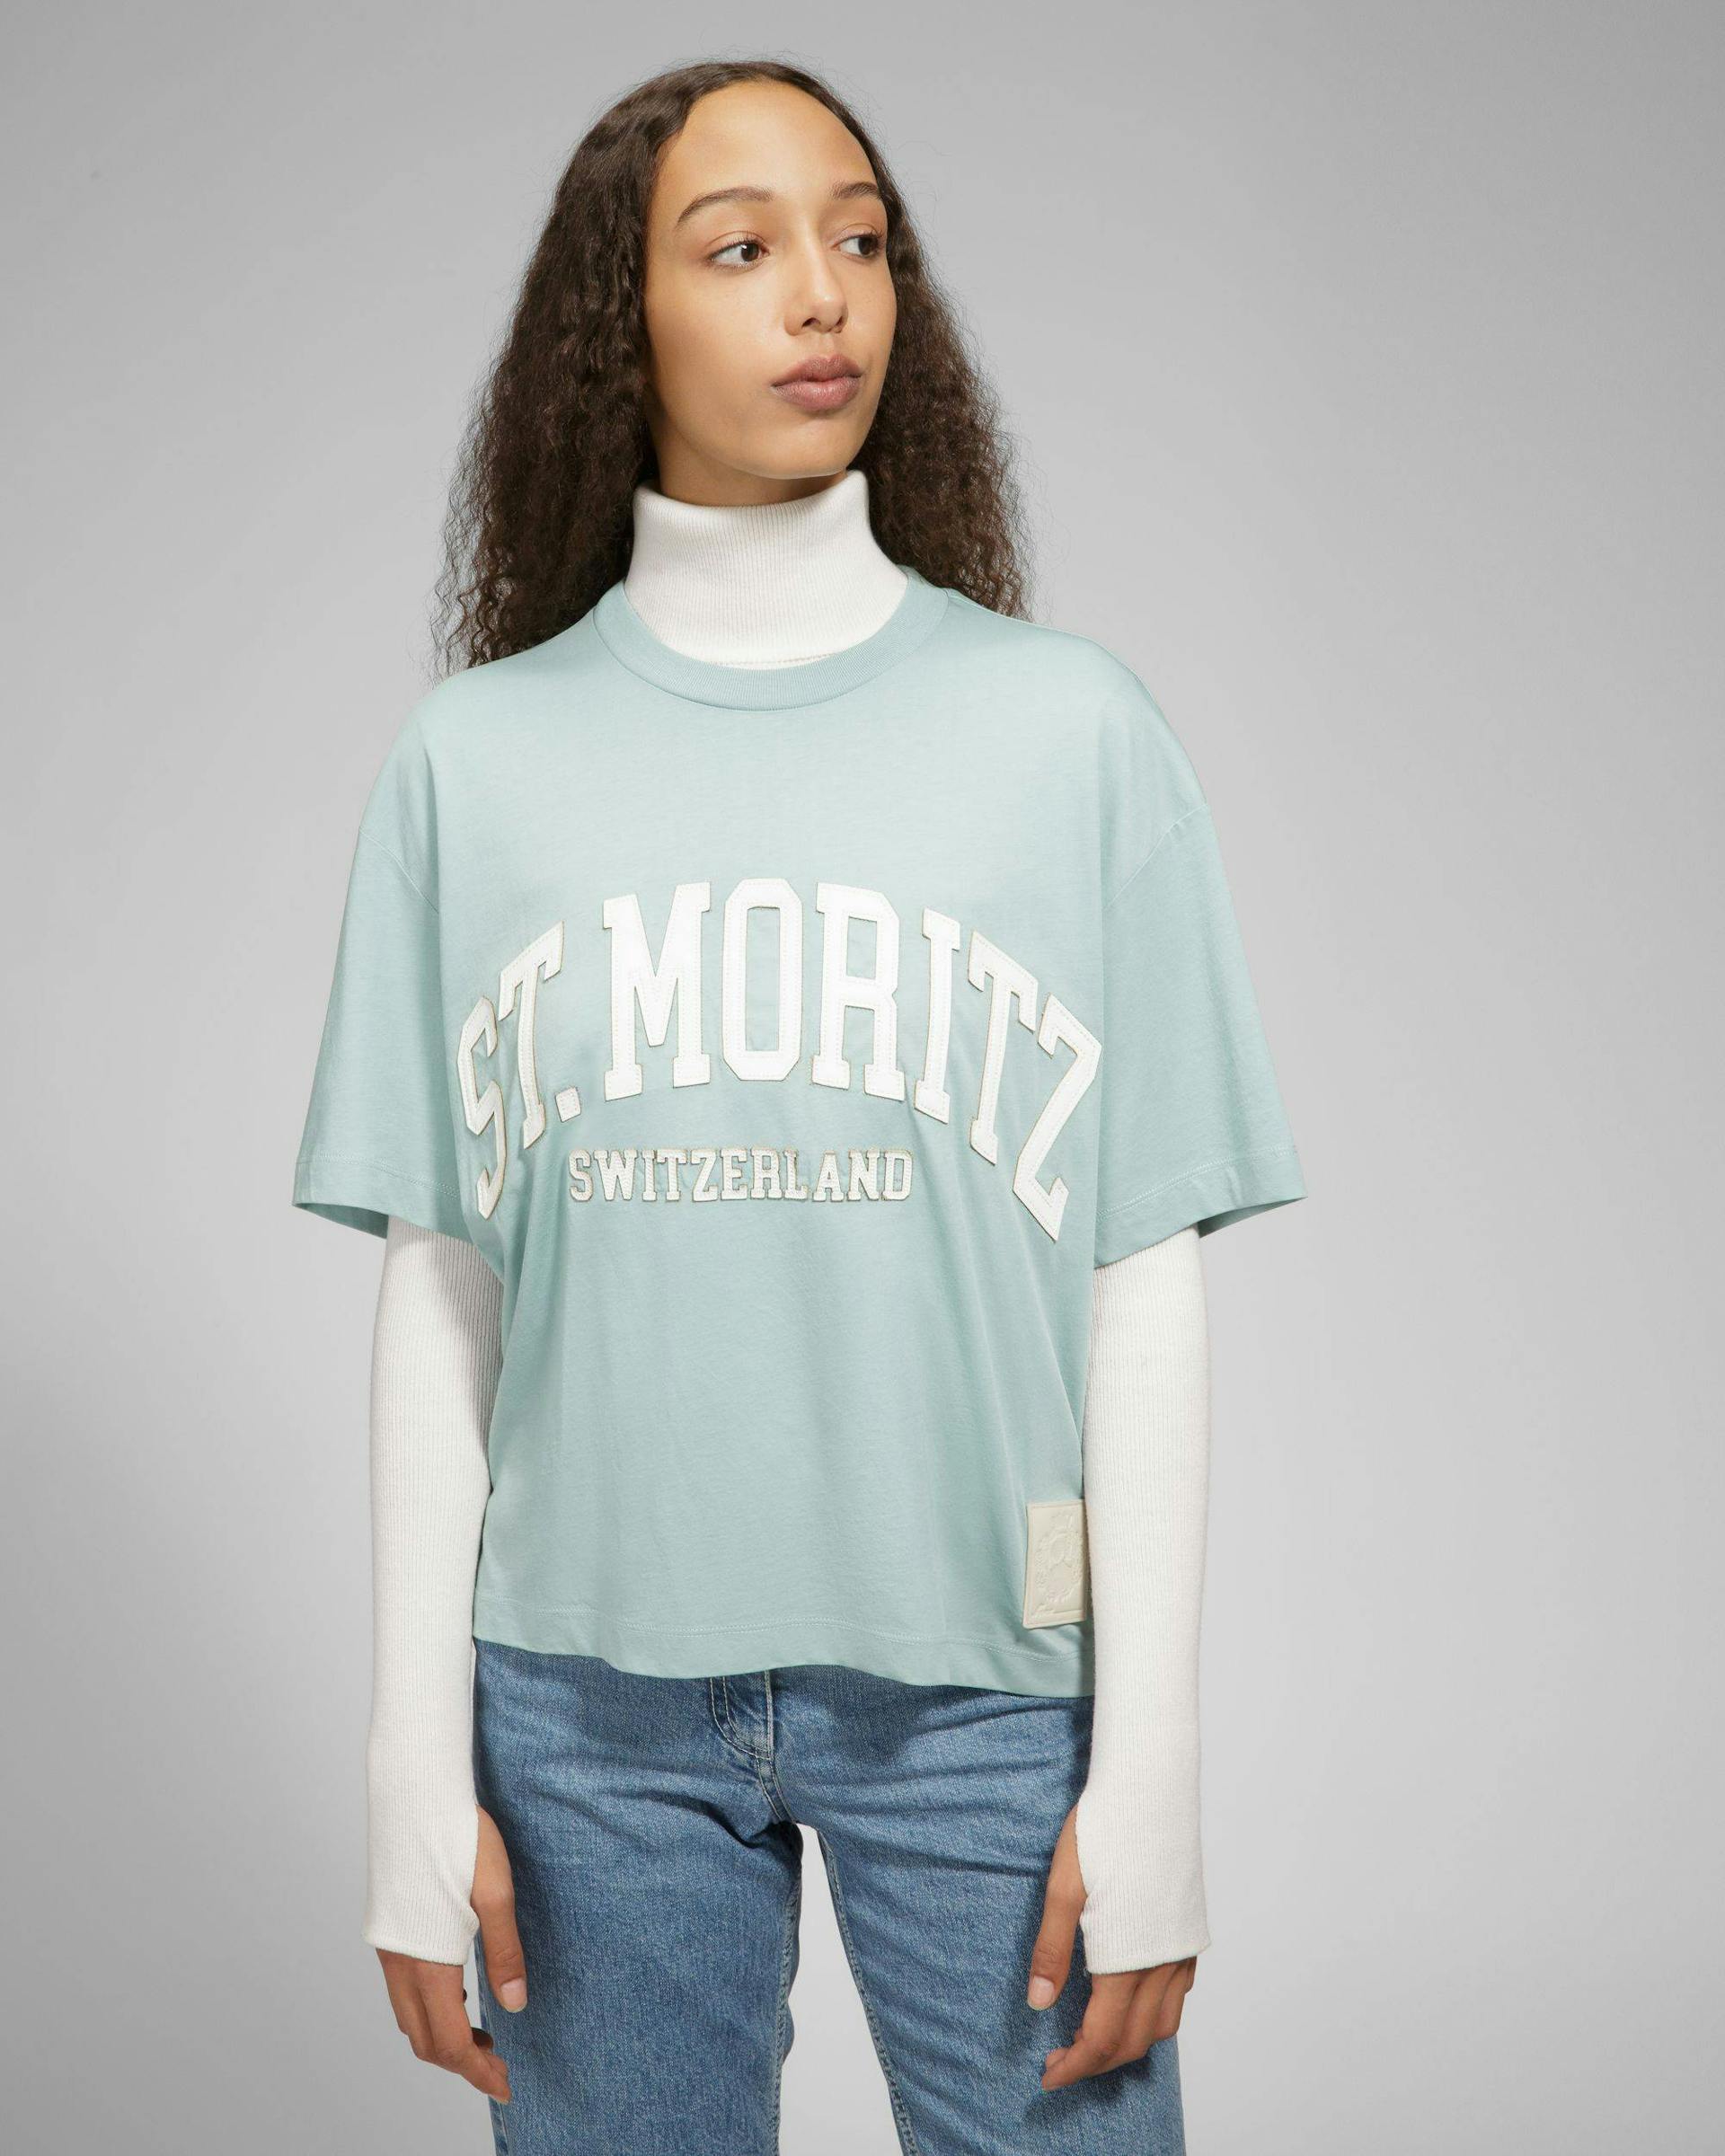 St Moritz Cotton T-Shirt - Bally